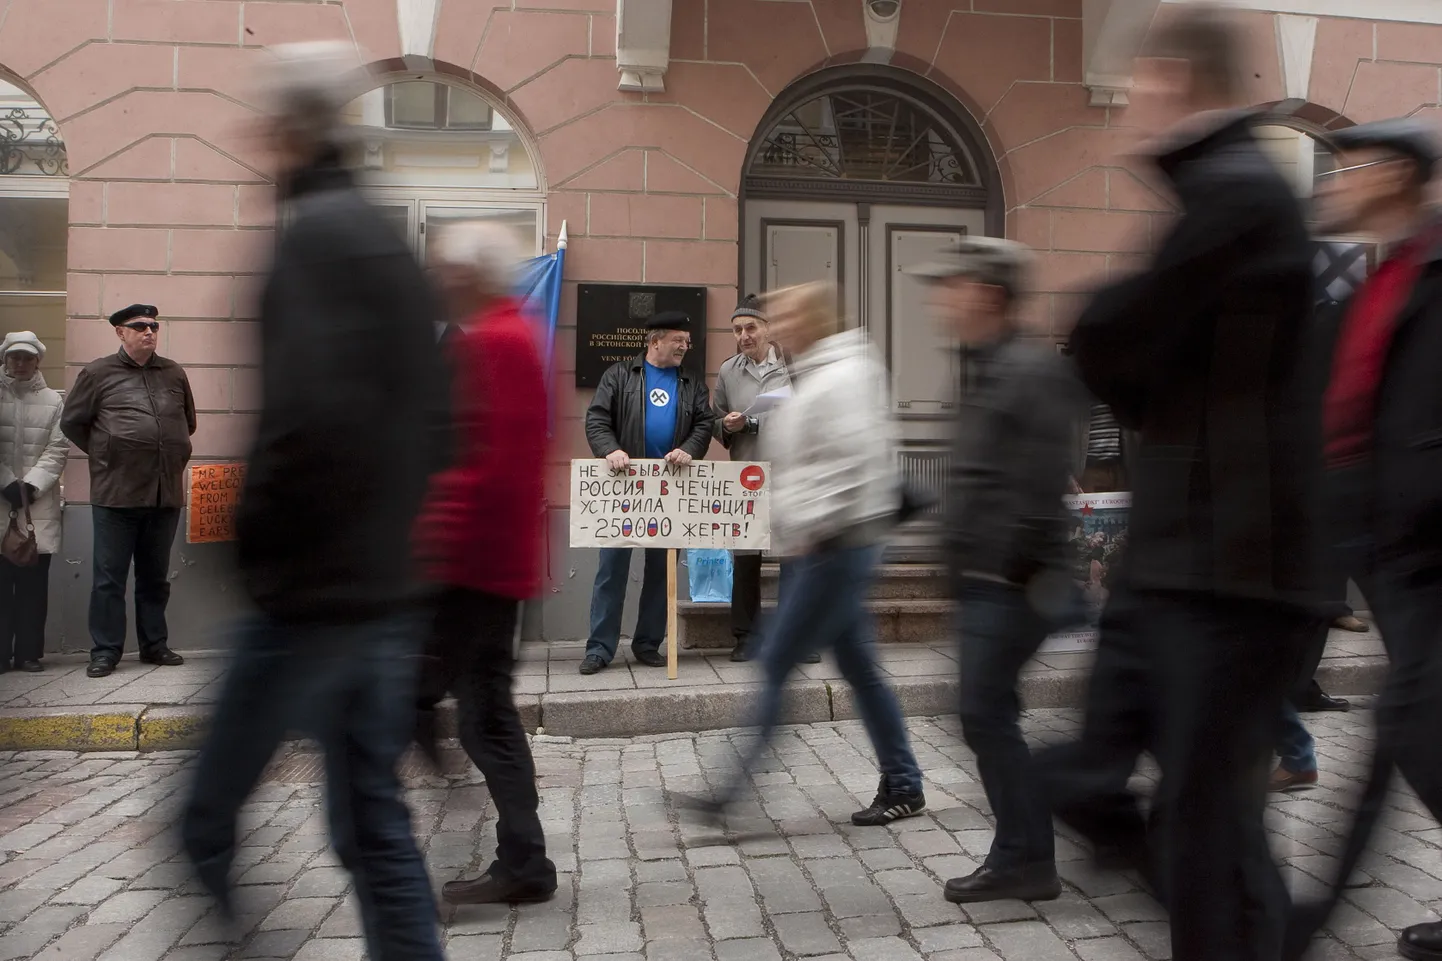 Прохожие не обращали внимания на пикет националистов у посольства РФ